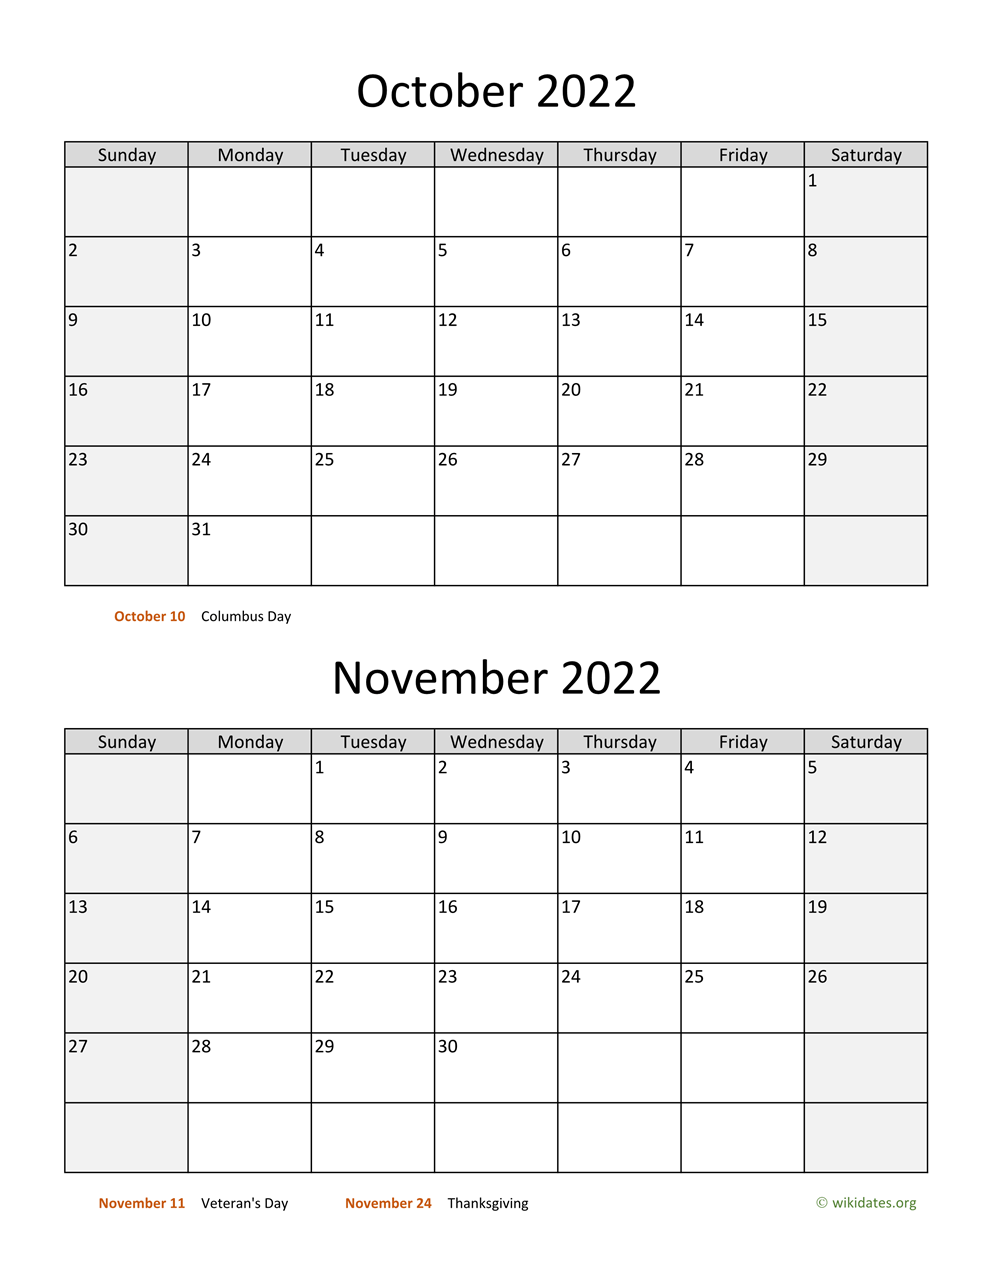 October And November 2022 Calendar October And November 2022 Calendar | Wikidates.org